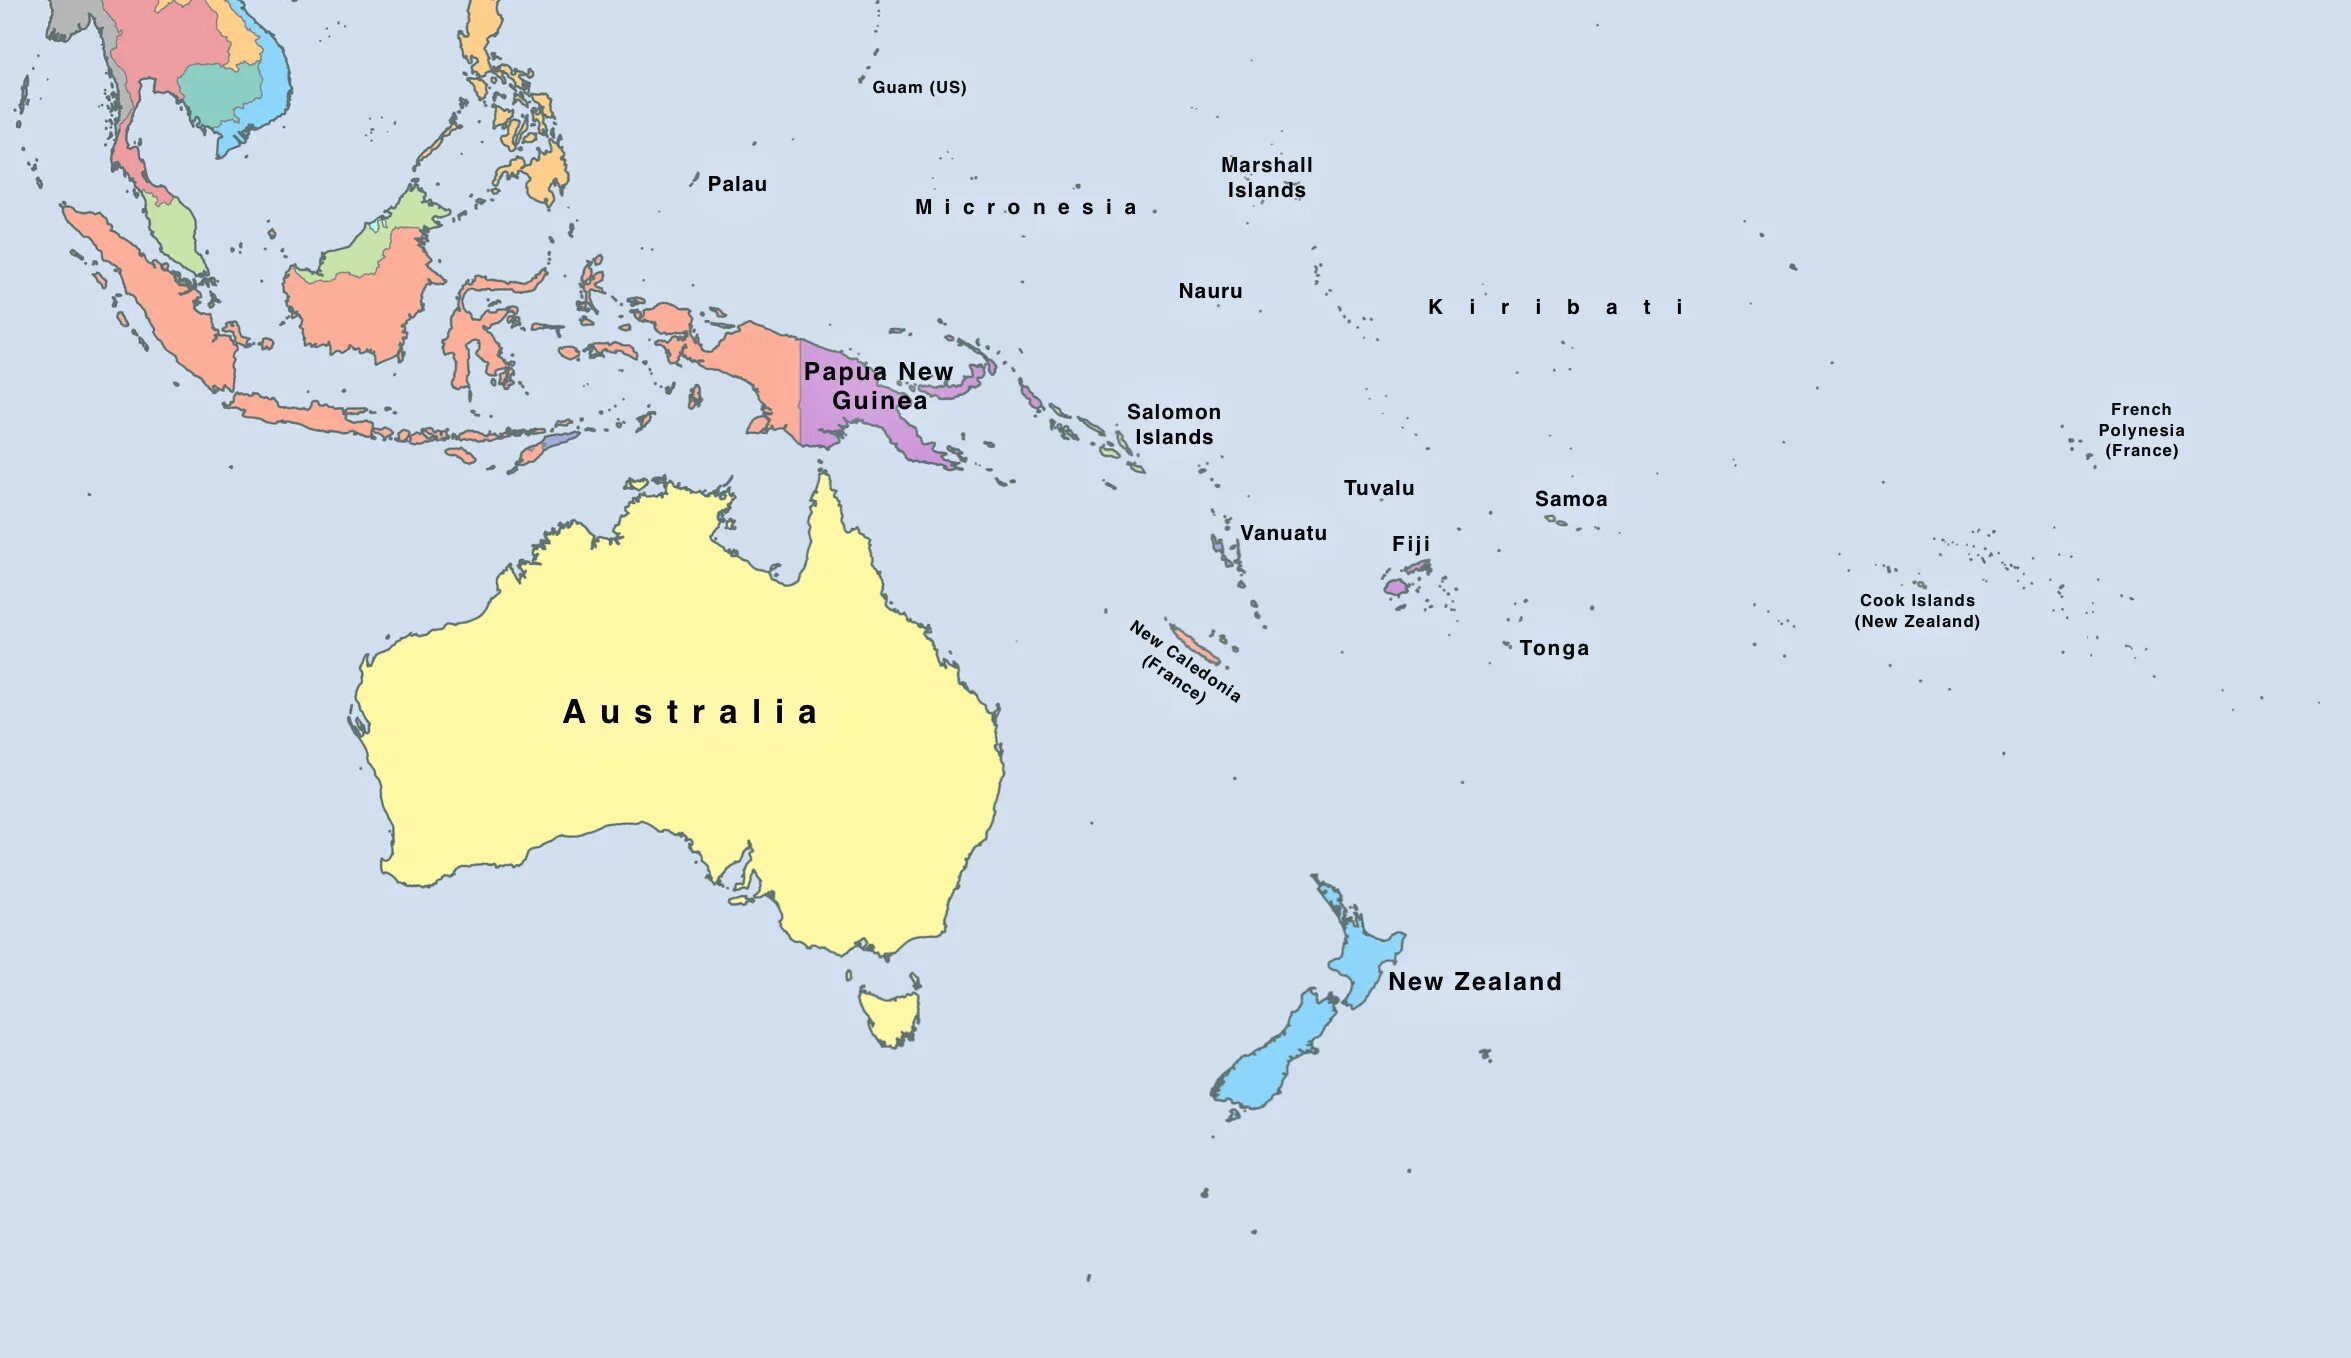 Страны океании австралия и новая зеландия. Политическая карта Океании. Полит карта Океании. Полит карта Австралии и Океании. Политическая карта Австралии и Океании со странами.